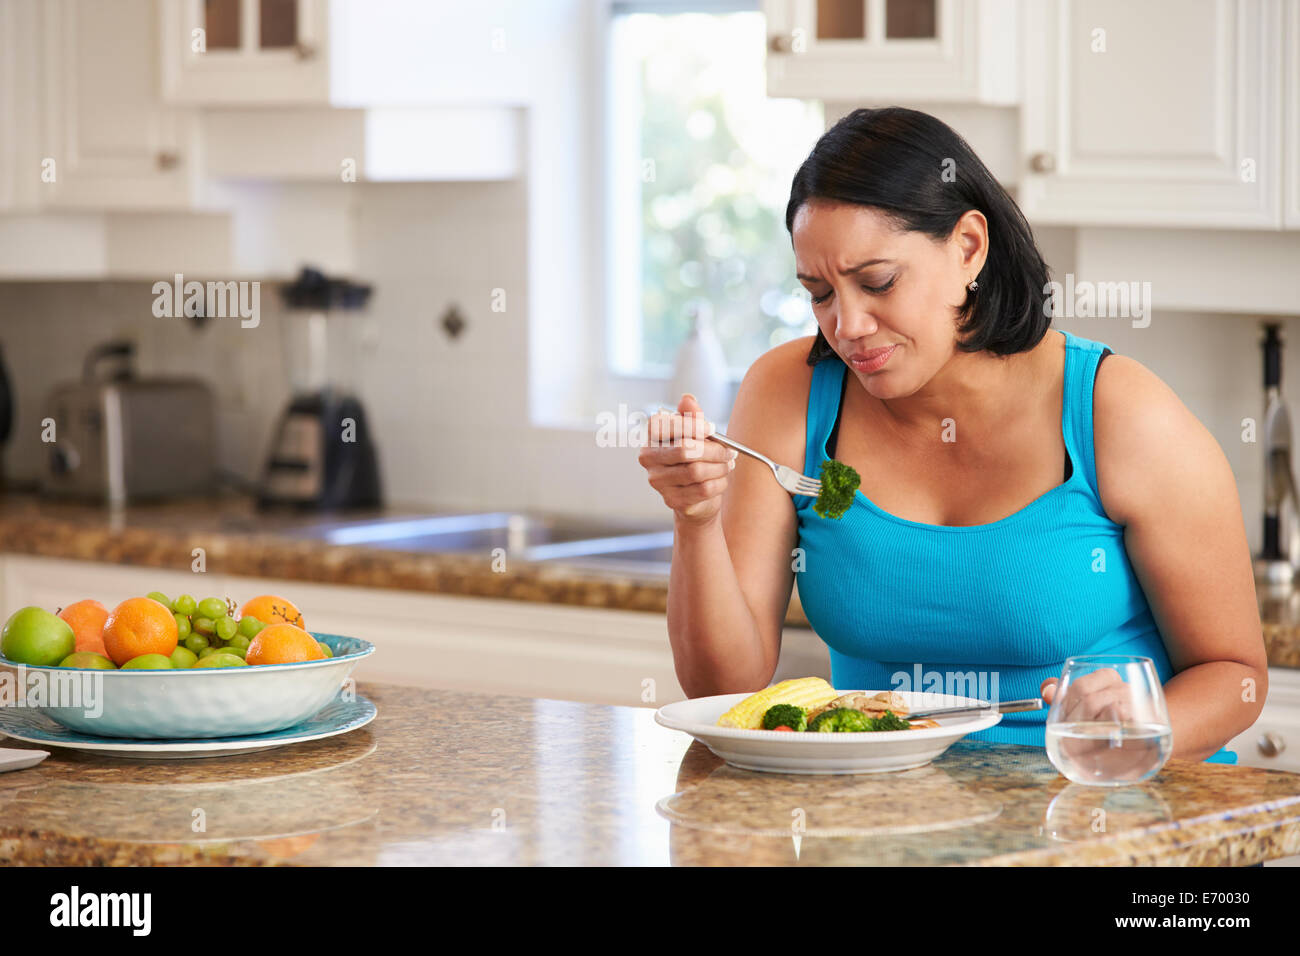 Alimentato fino al sovrappeso donna mangiare sano pasto in cucina Foto Stock